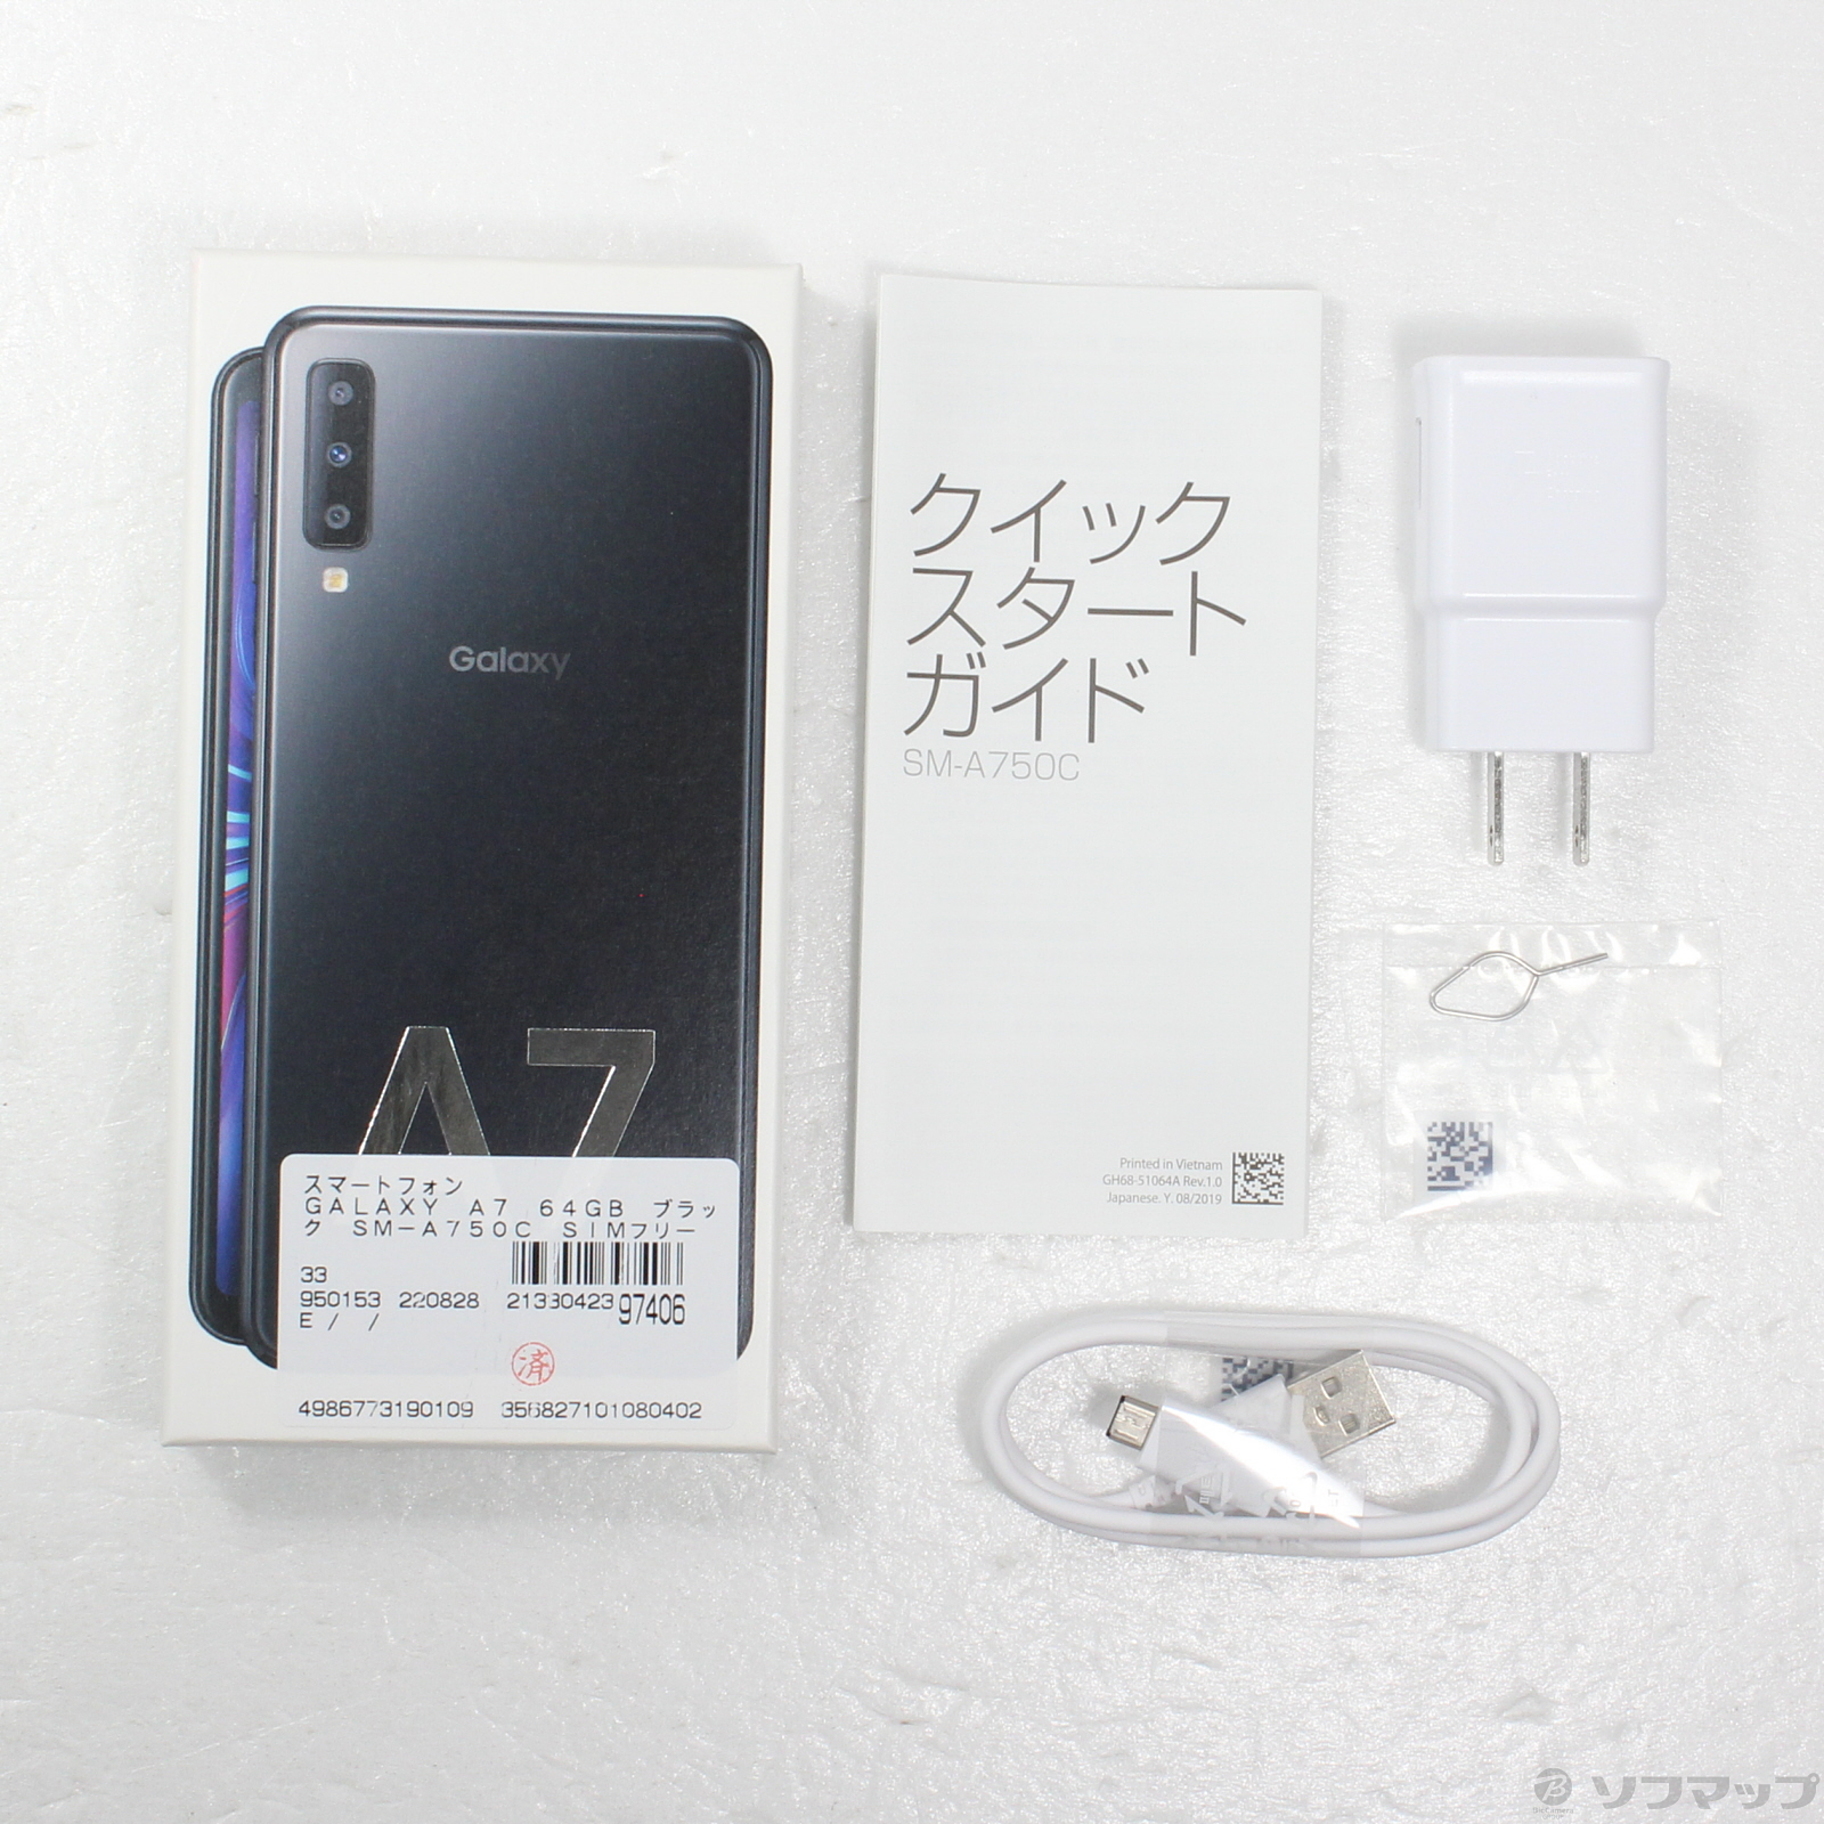 約60インチFHDCPU【未開封品】Galaxy A7 64GB ブラック SM-A750C